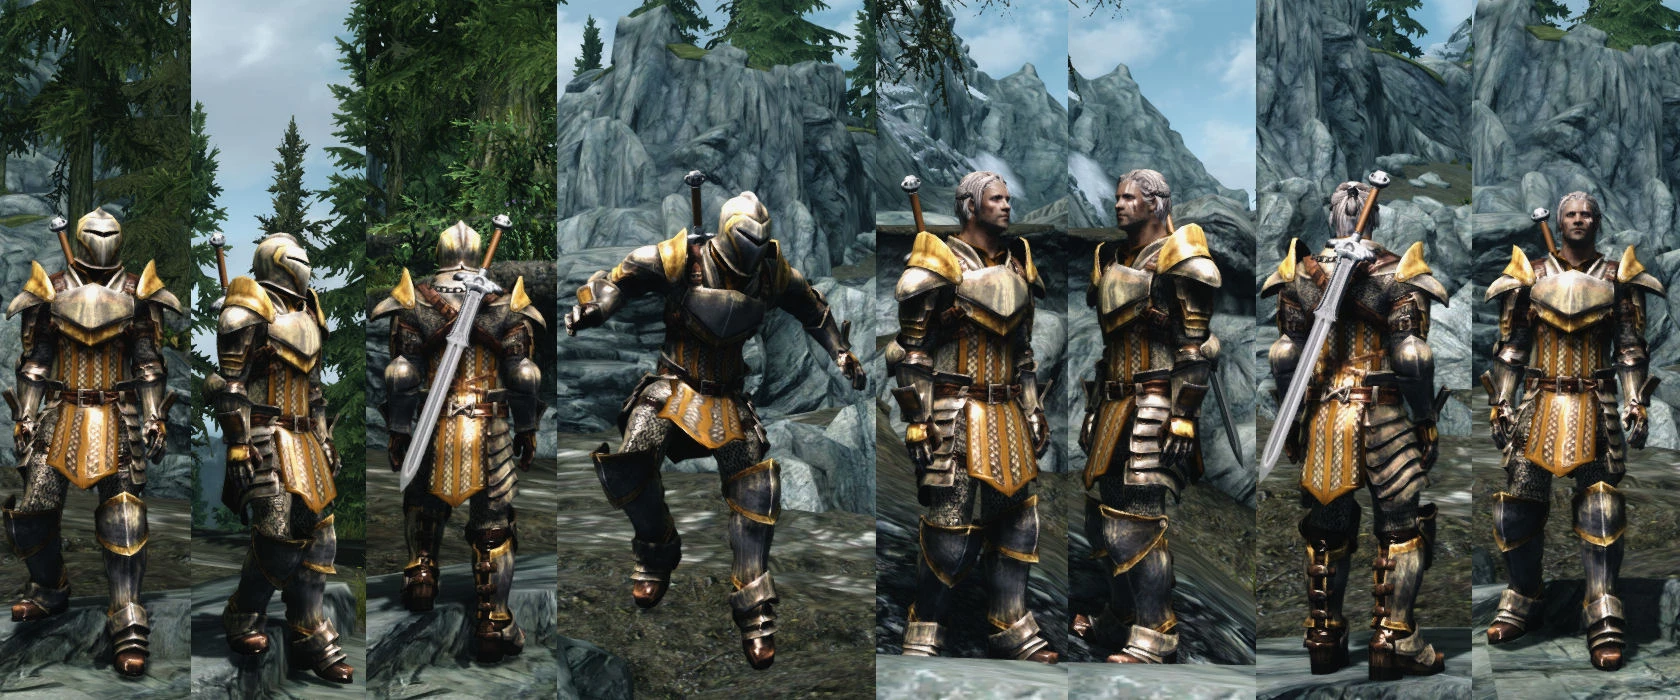 skyrim warden armor mod